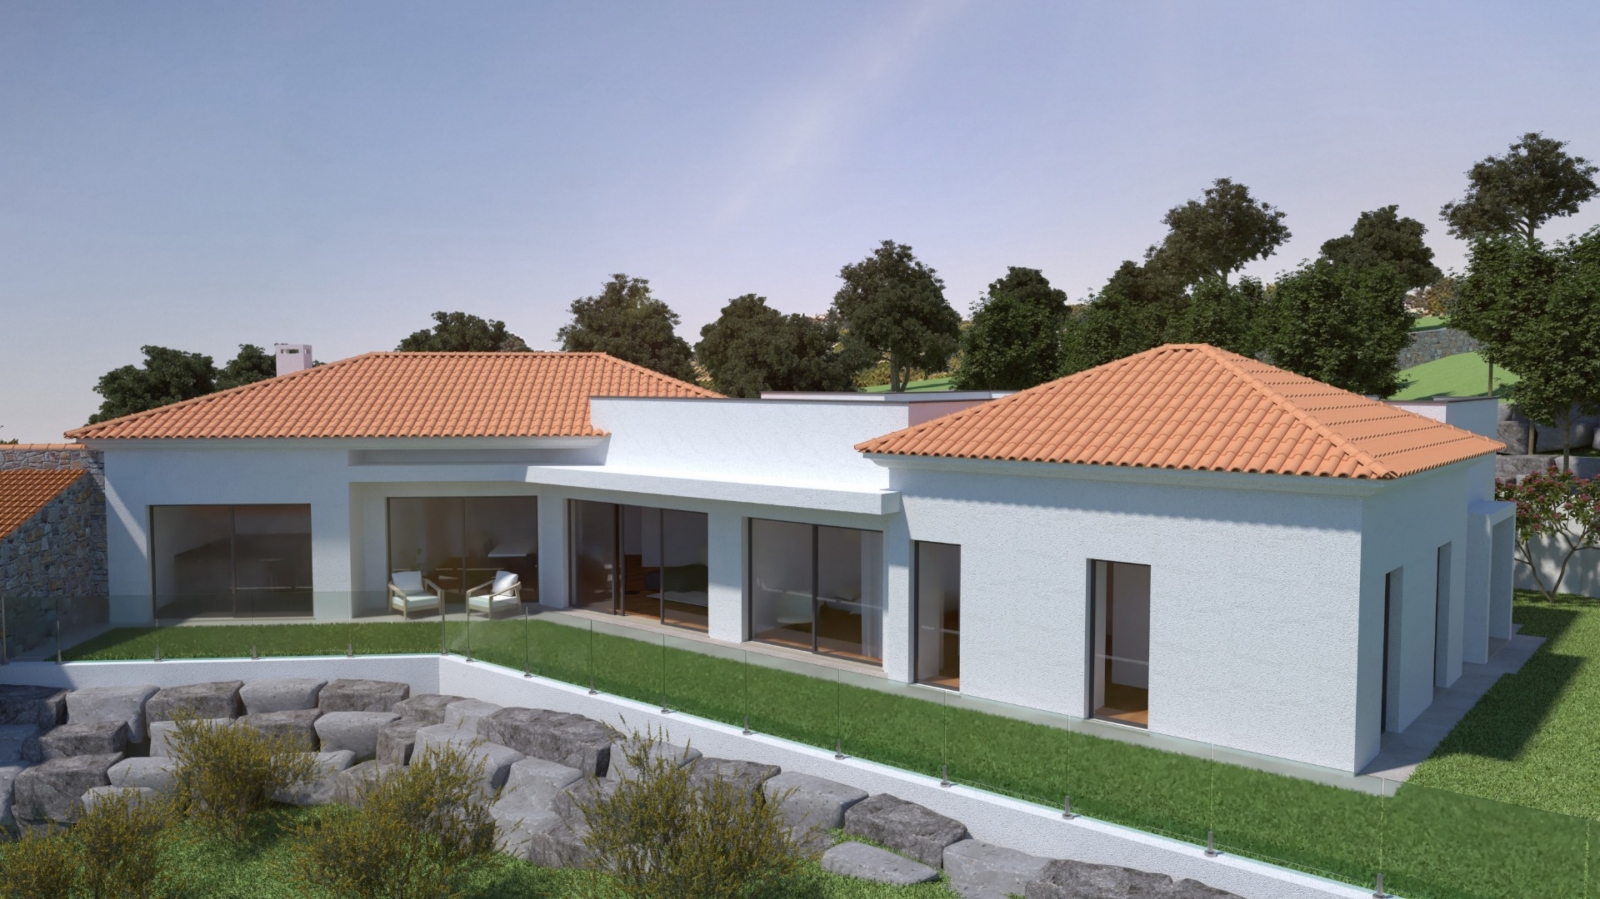 Terreno para construção de moradia T3, para venda, em Silves, Algarve_200009